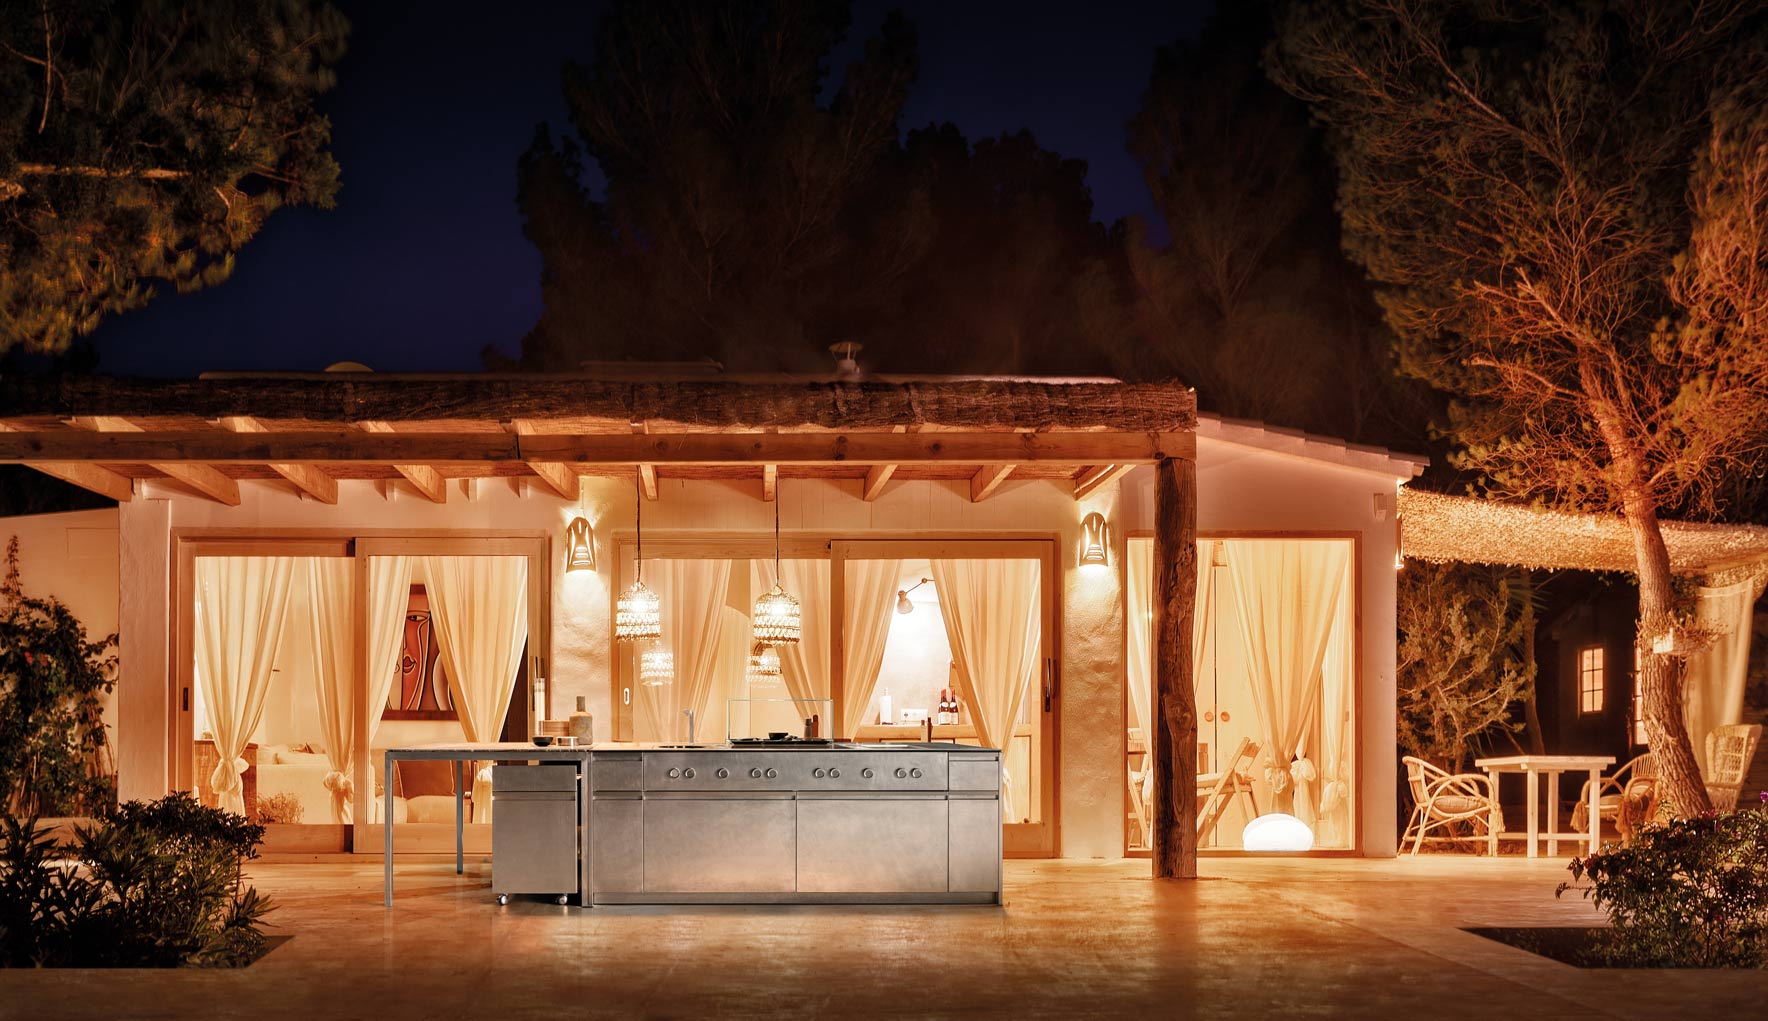 Luxurious outdoor kitchen designs